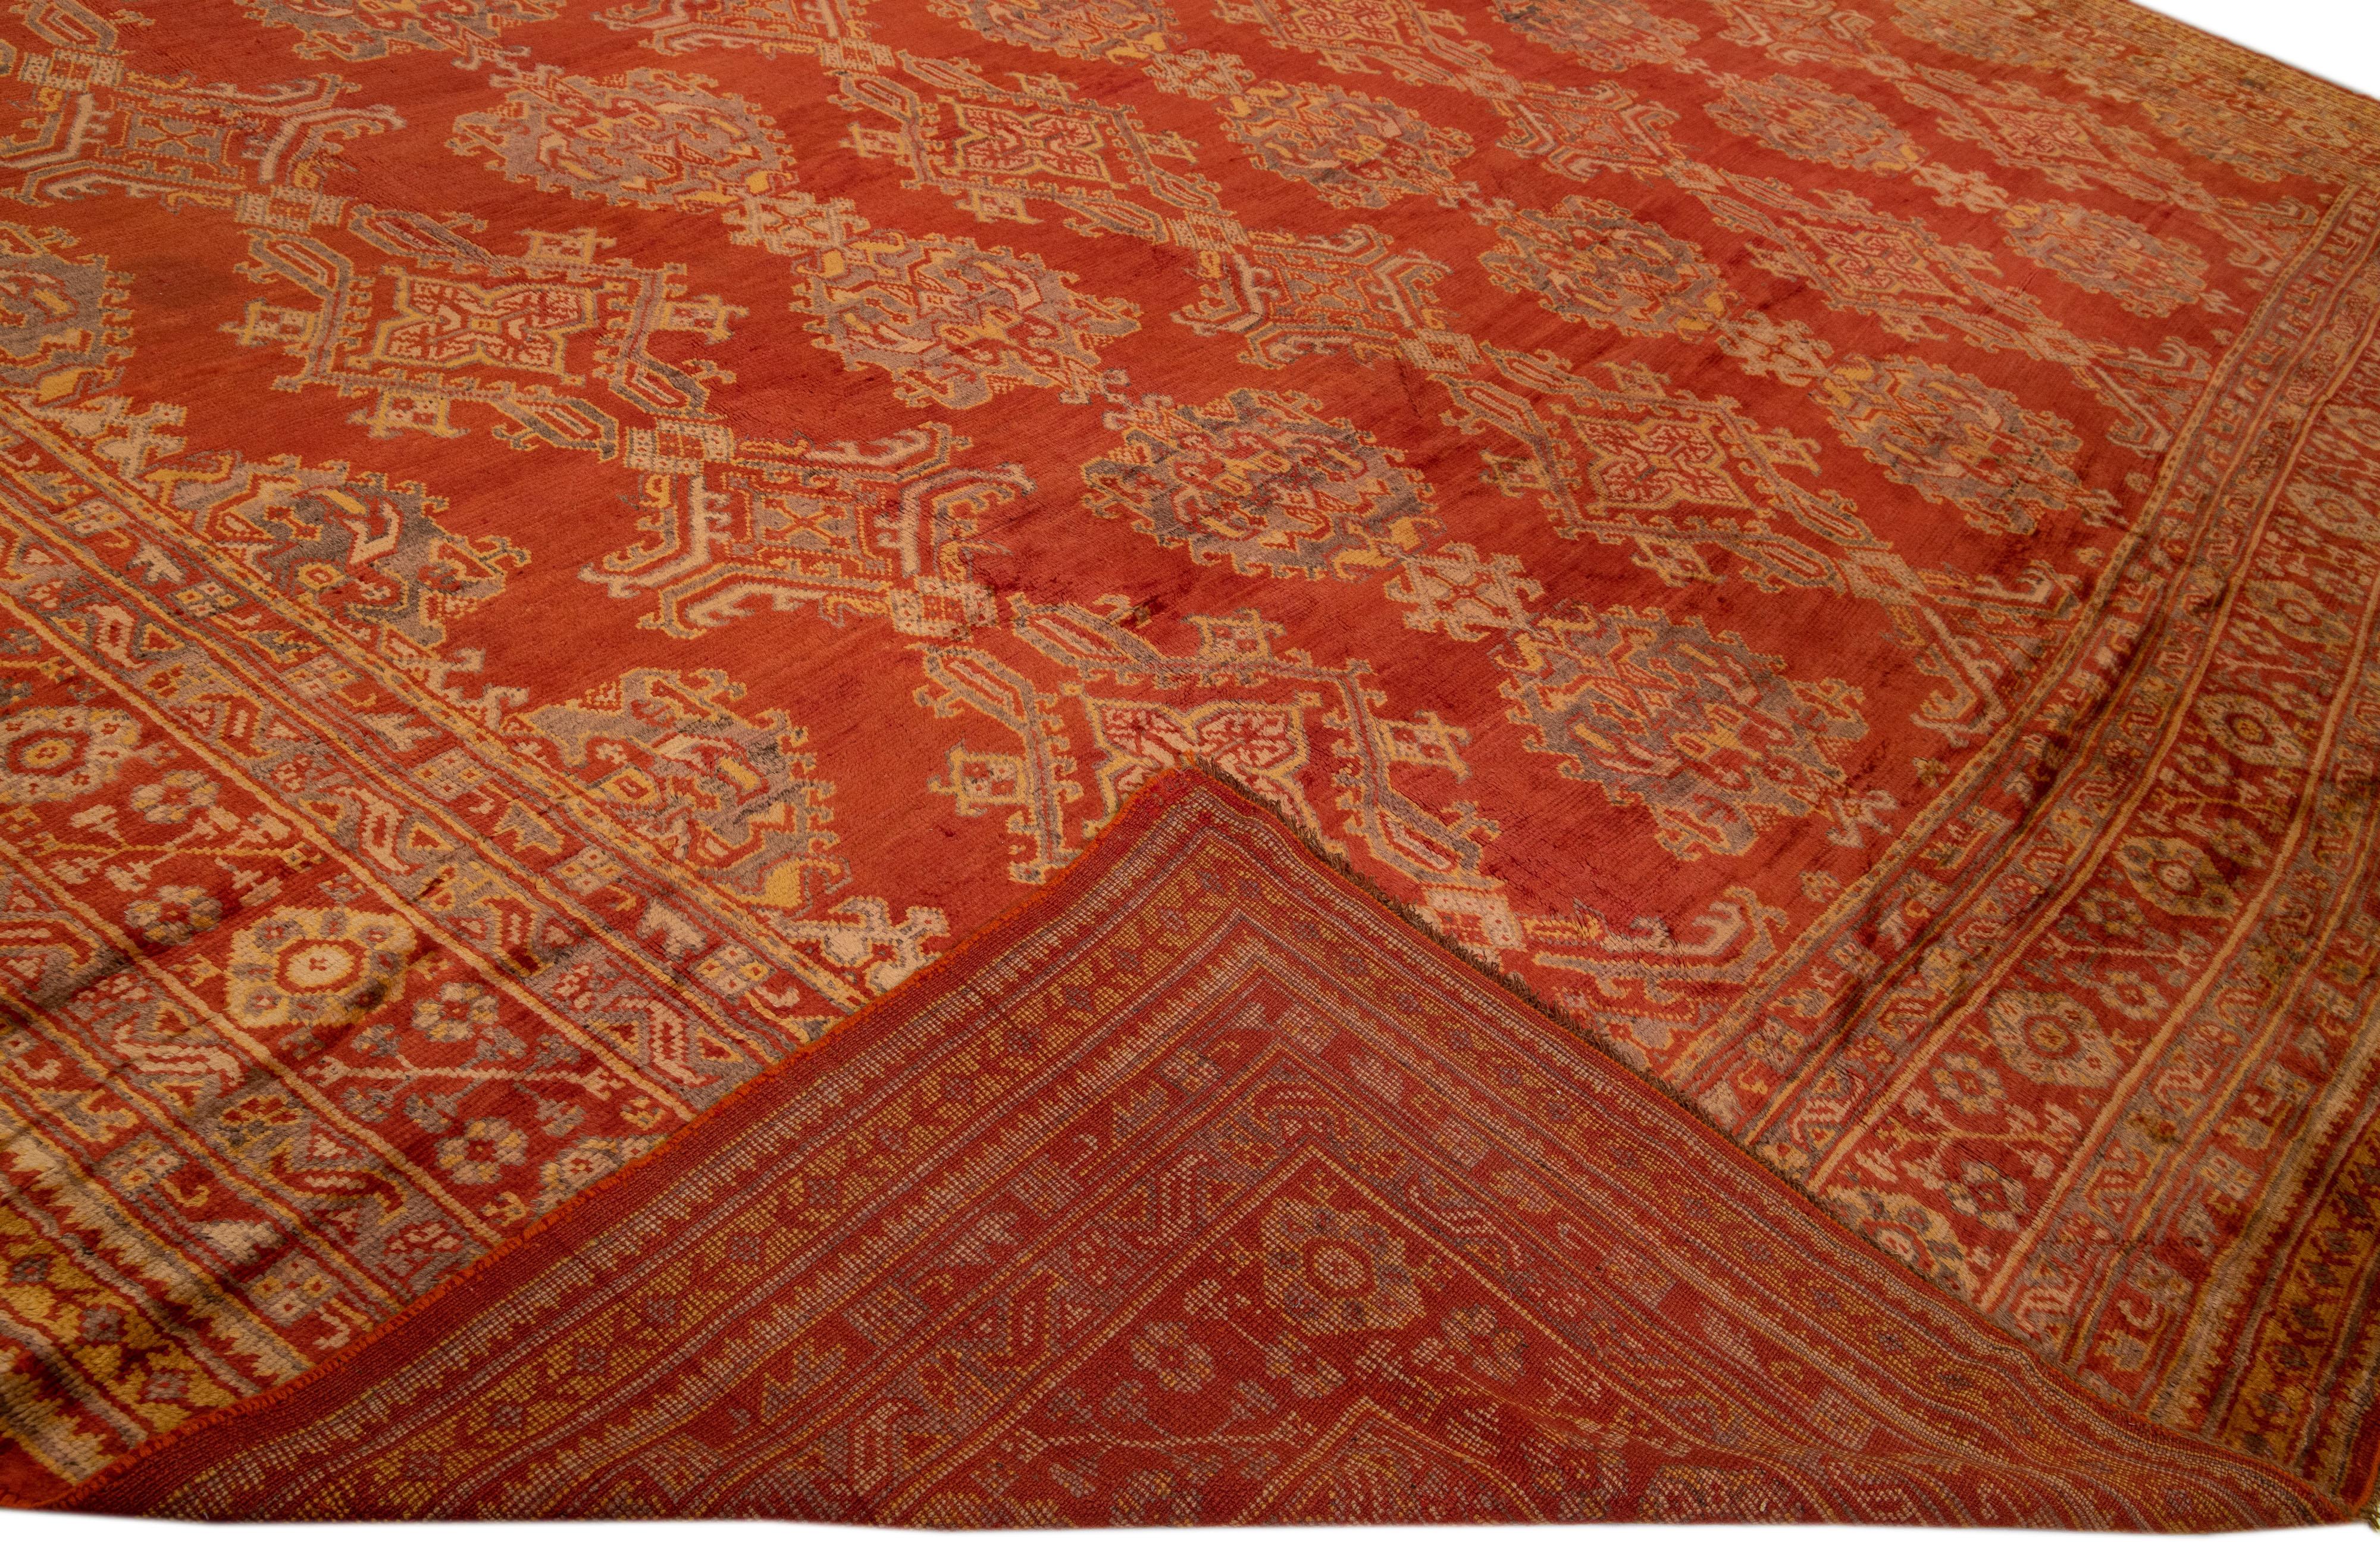 Schöner türkischer handgeknüpfter Wollteppich im Vintage-Stil mit einem orange-rostfarbenen Farbfeld. Dieser Teppich hat einen gestalteten Rahmen und graue Akzente in Goldrute und Braun in einem wunderschönen, geometrischen Blumenmuster.

Dieser